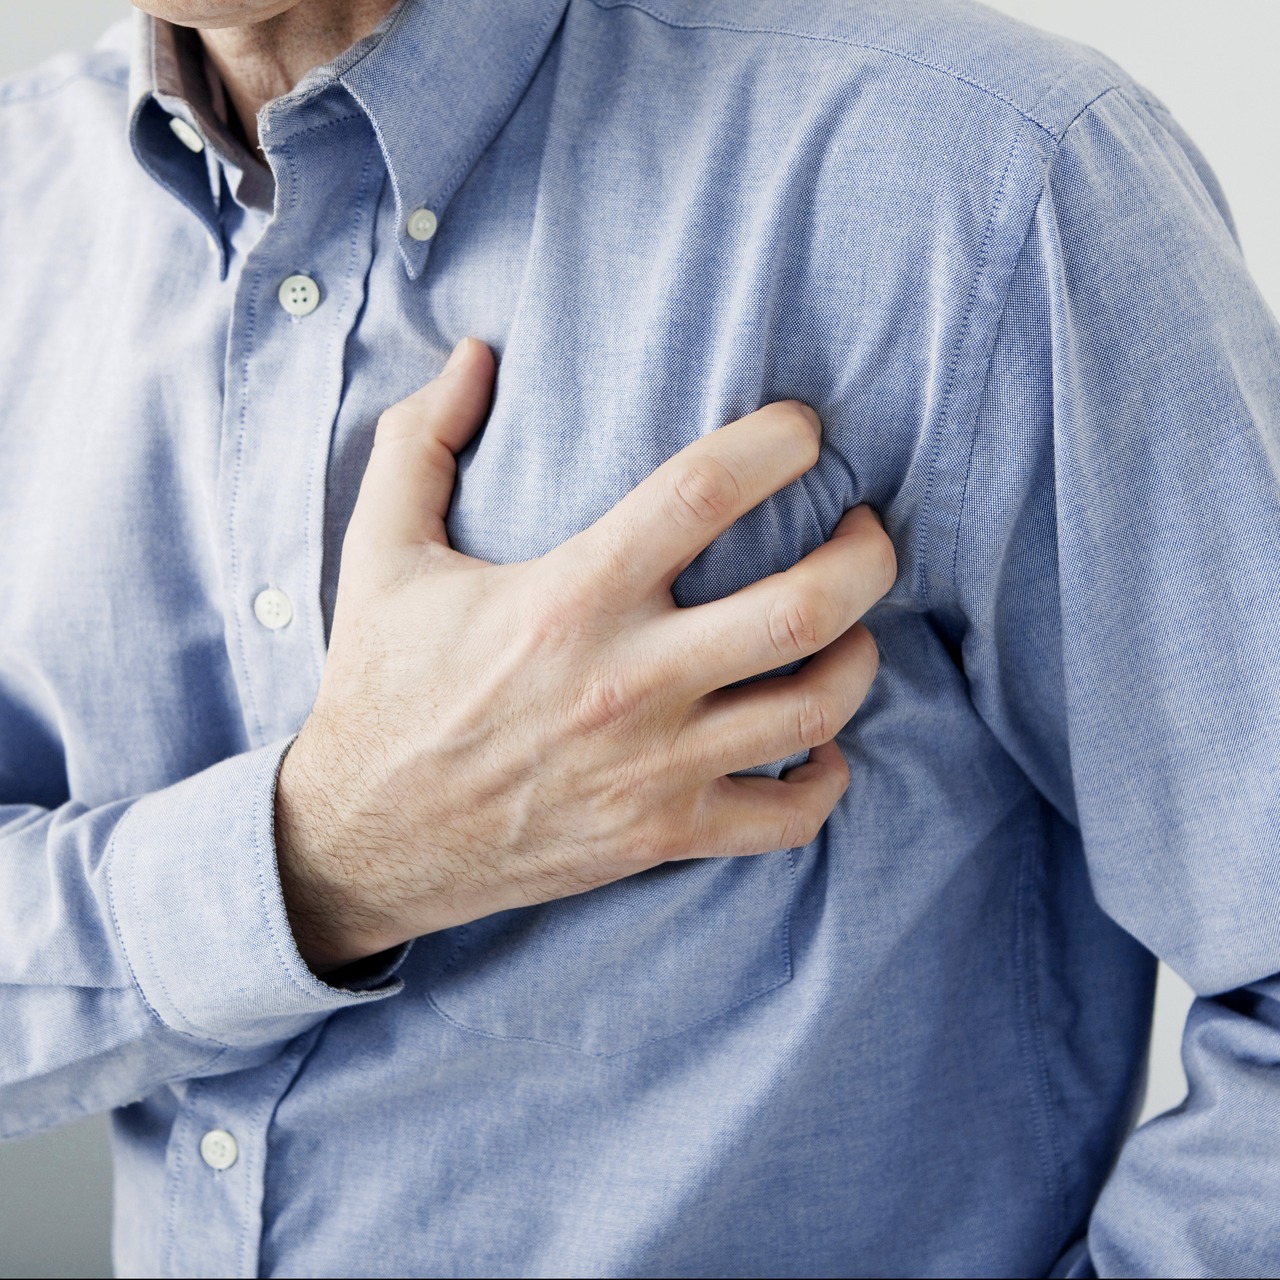 Kalp krizi uyarısı! Sabaha karşı risk artıyor